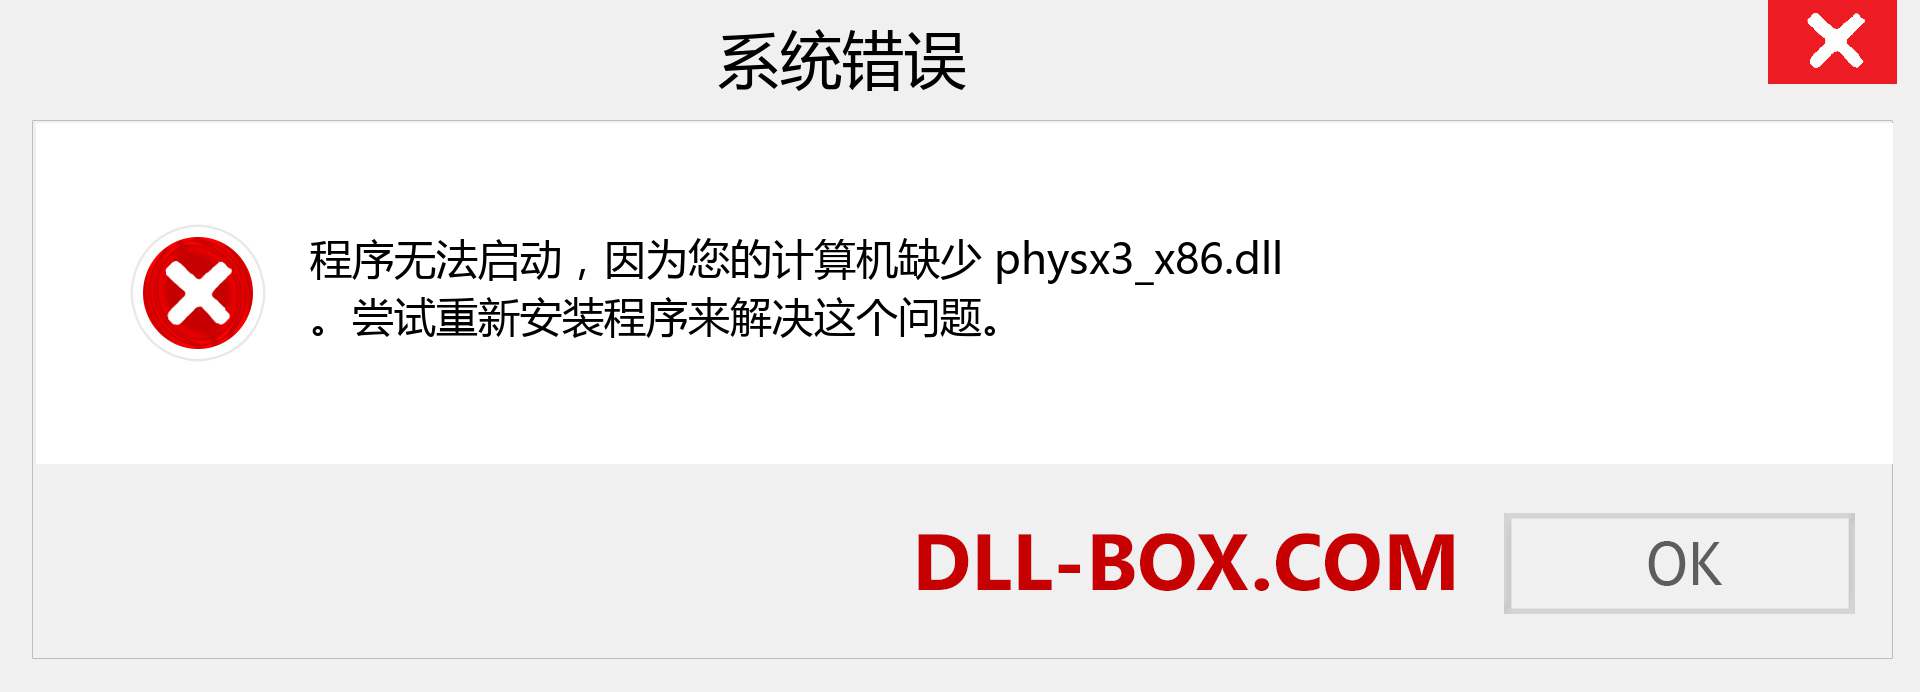 physx3_x86.dll 文件丢失？。 适用于 Windows 7、8、10 的下载 - 修复 Windows、照片、图像上的 physx3_x86 dll 丢失错误